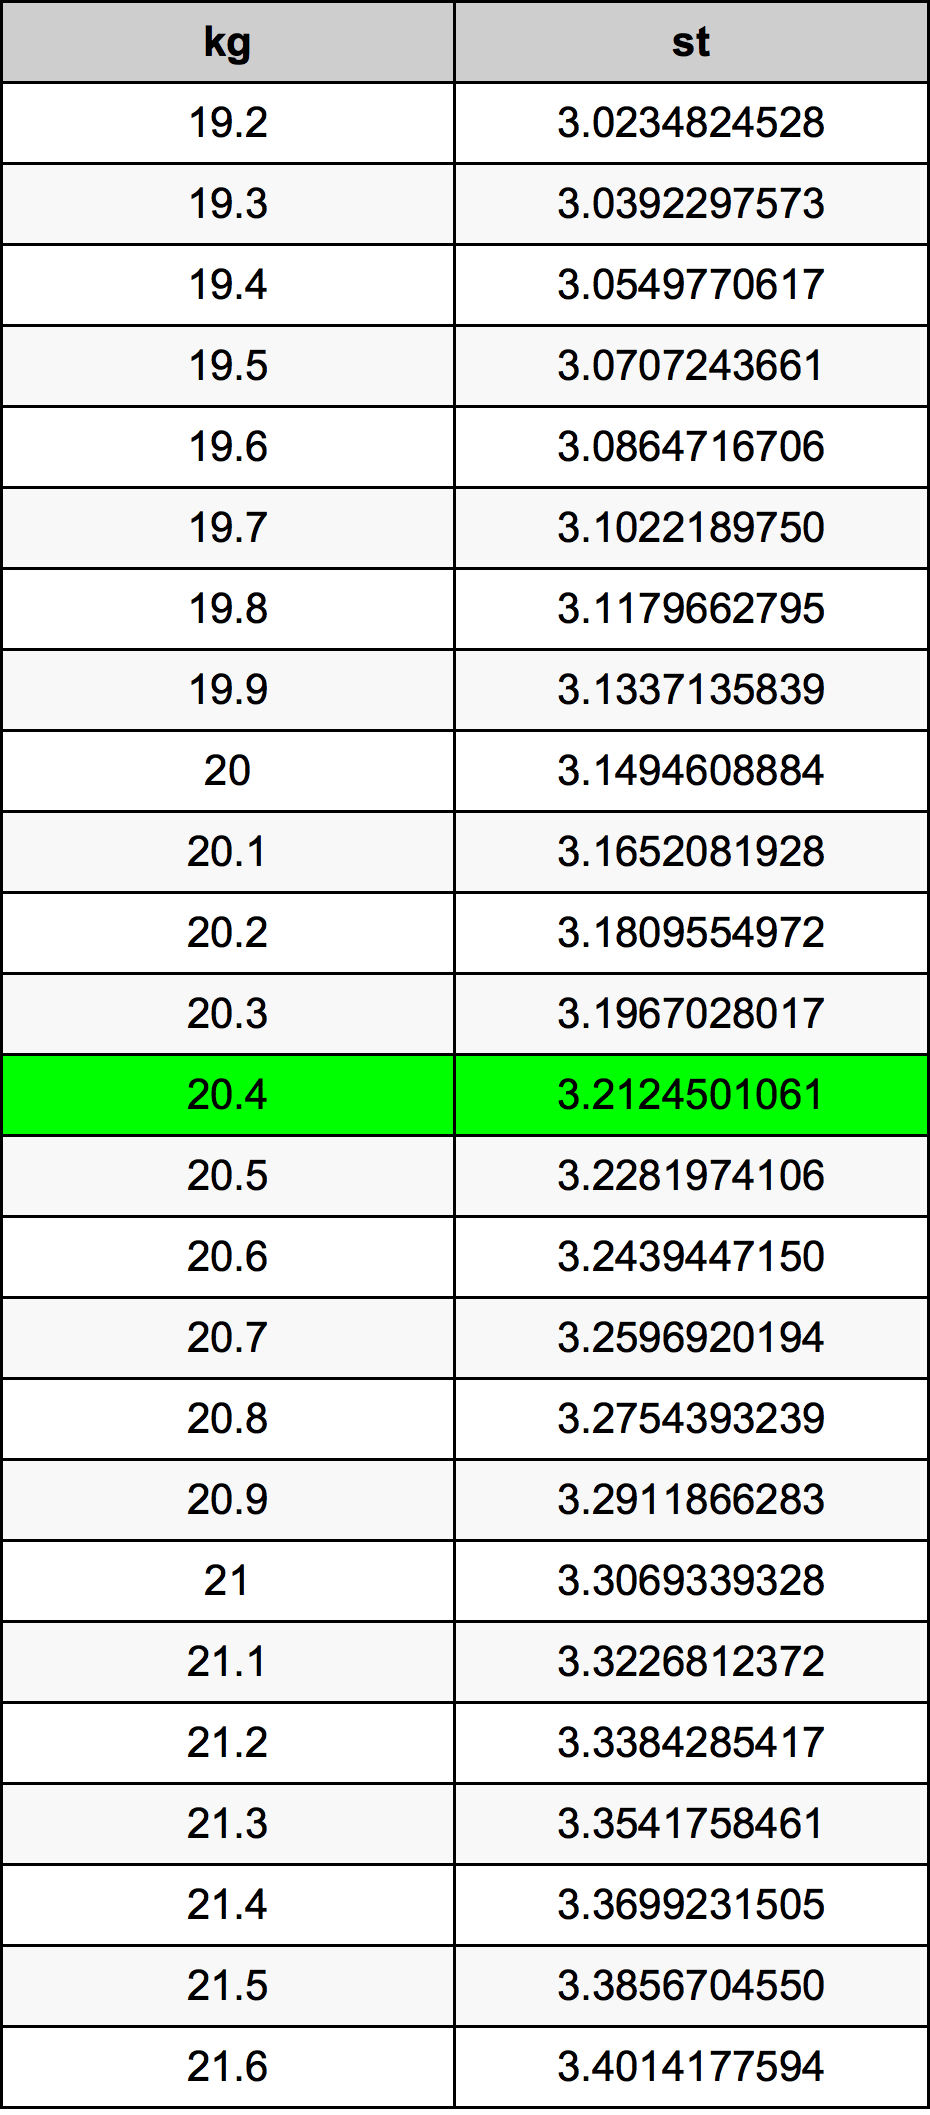 20.4 Kilogramme table de conversion